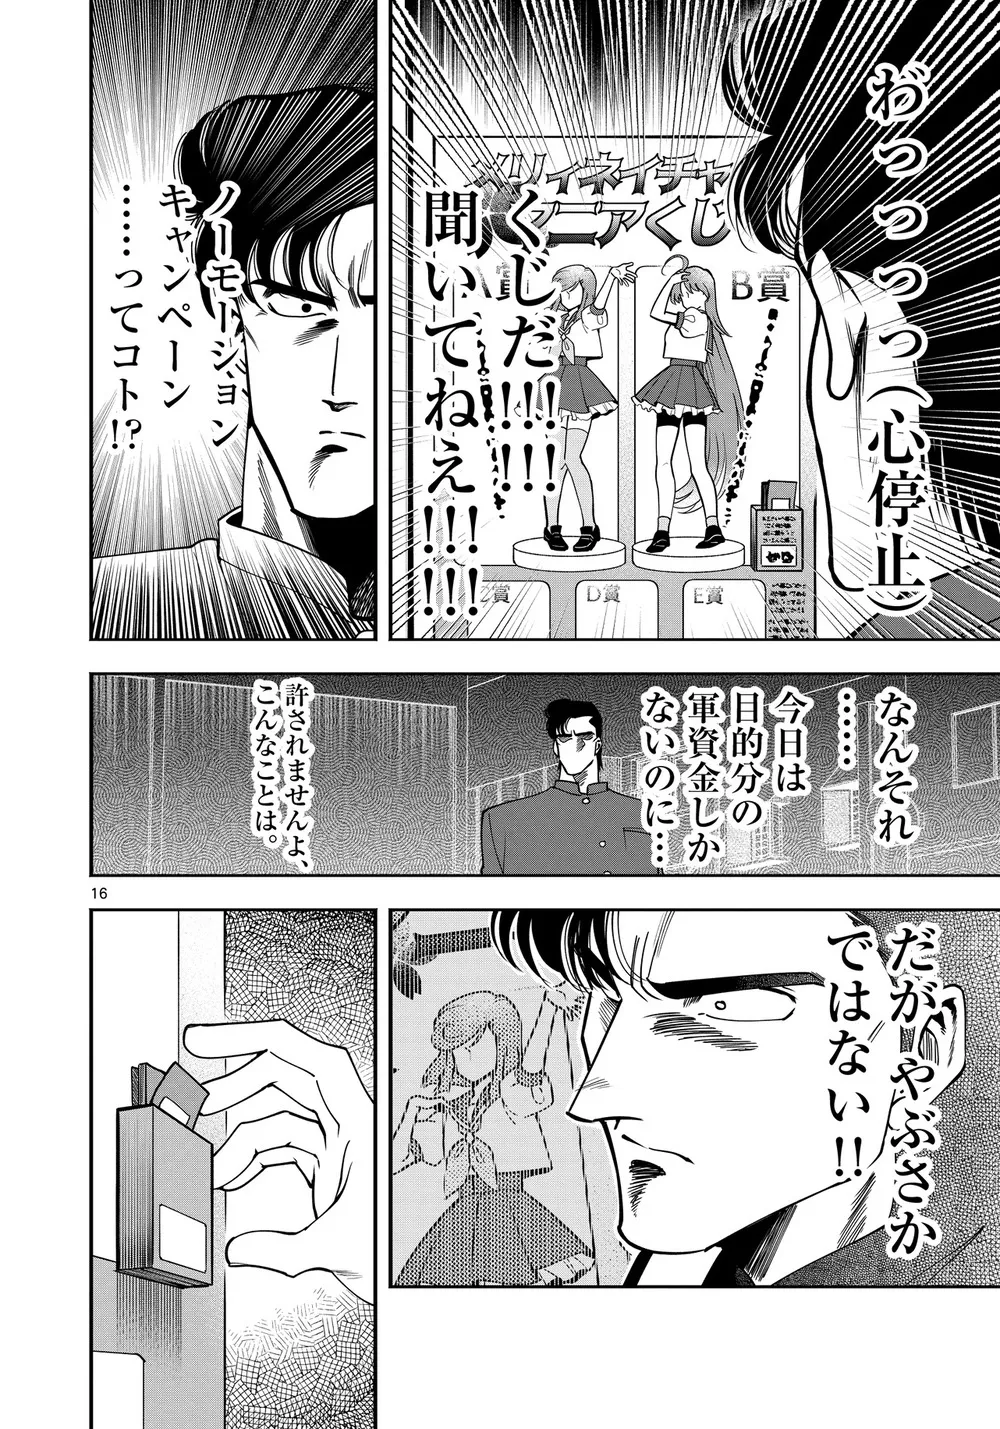 『限界!推し活伝説 YOSHIO』(15/38)